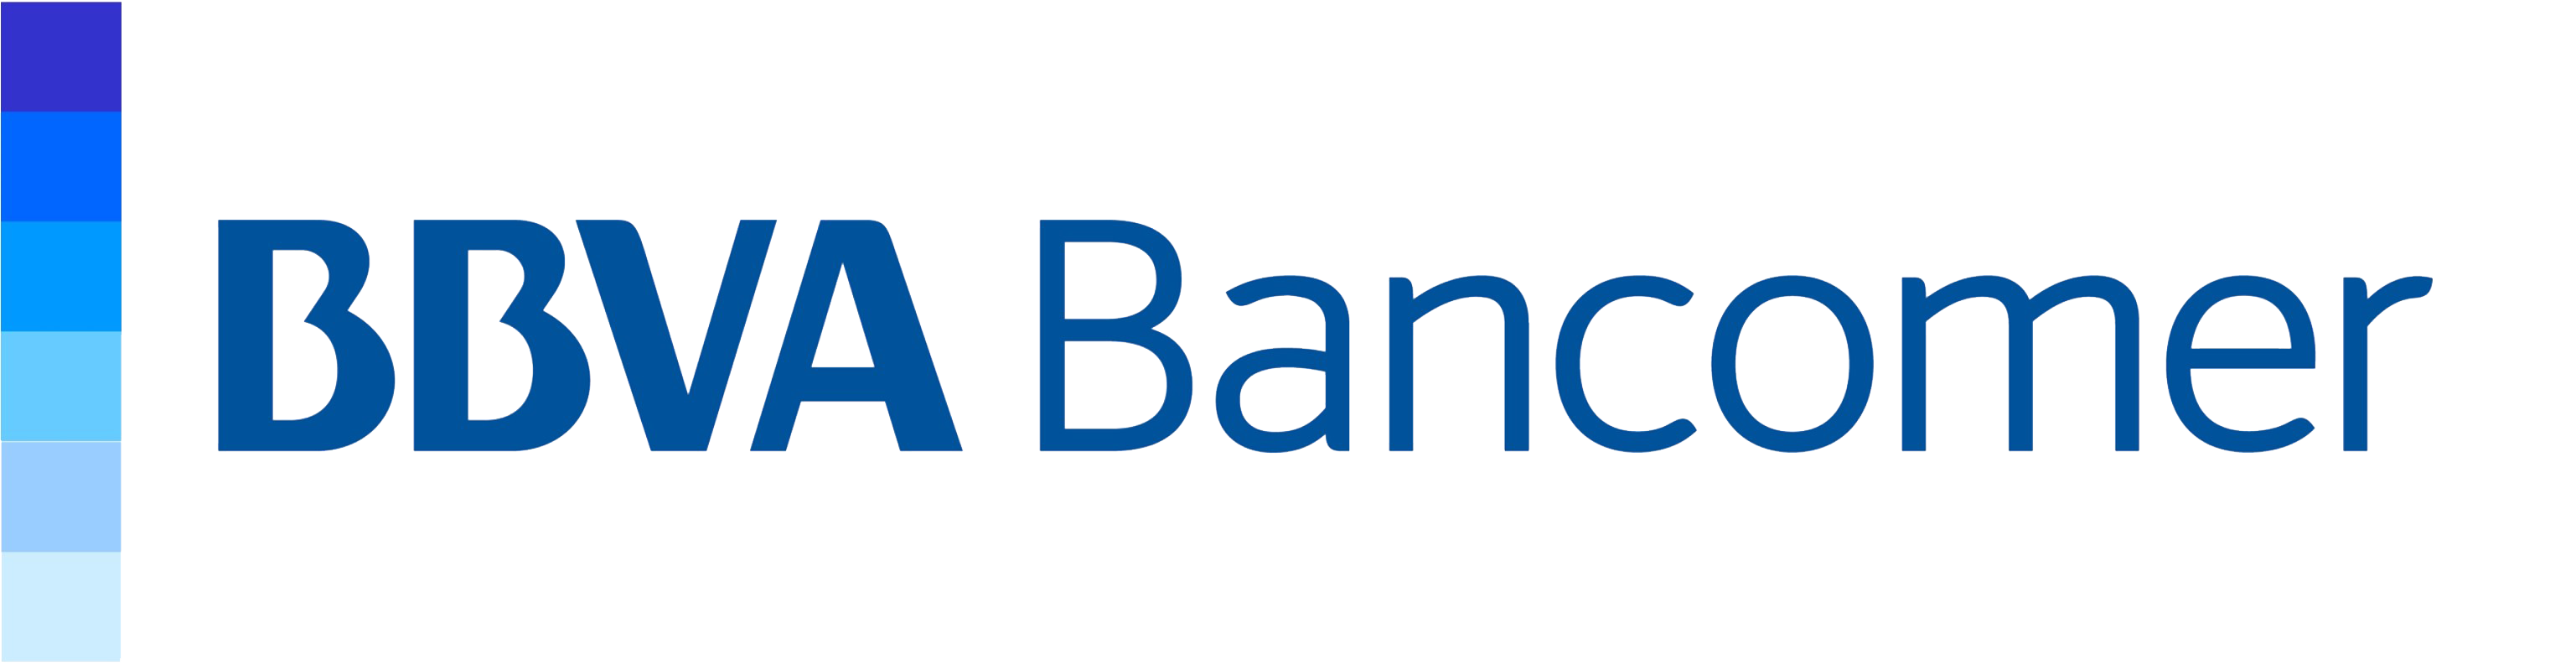 Bancomer SA Logo photo - 1